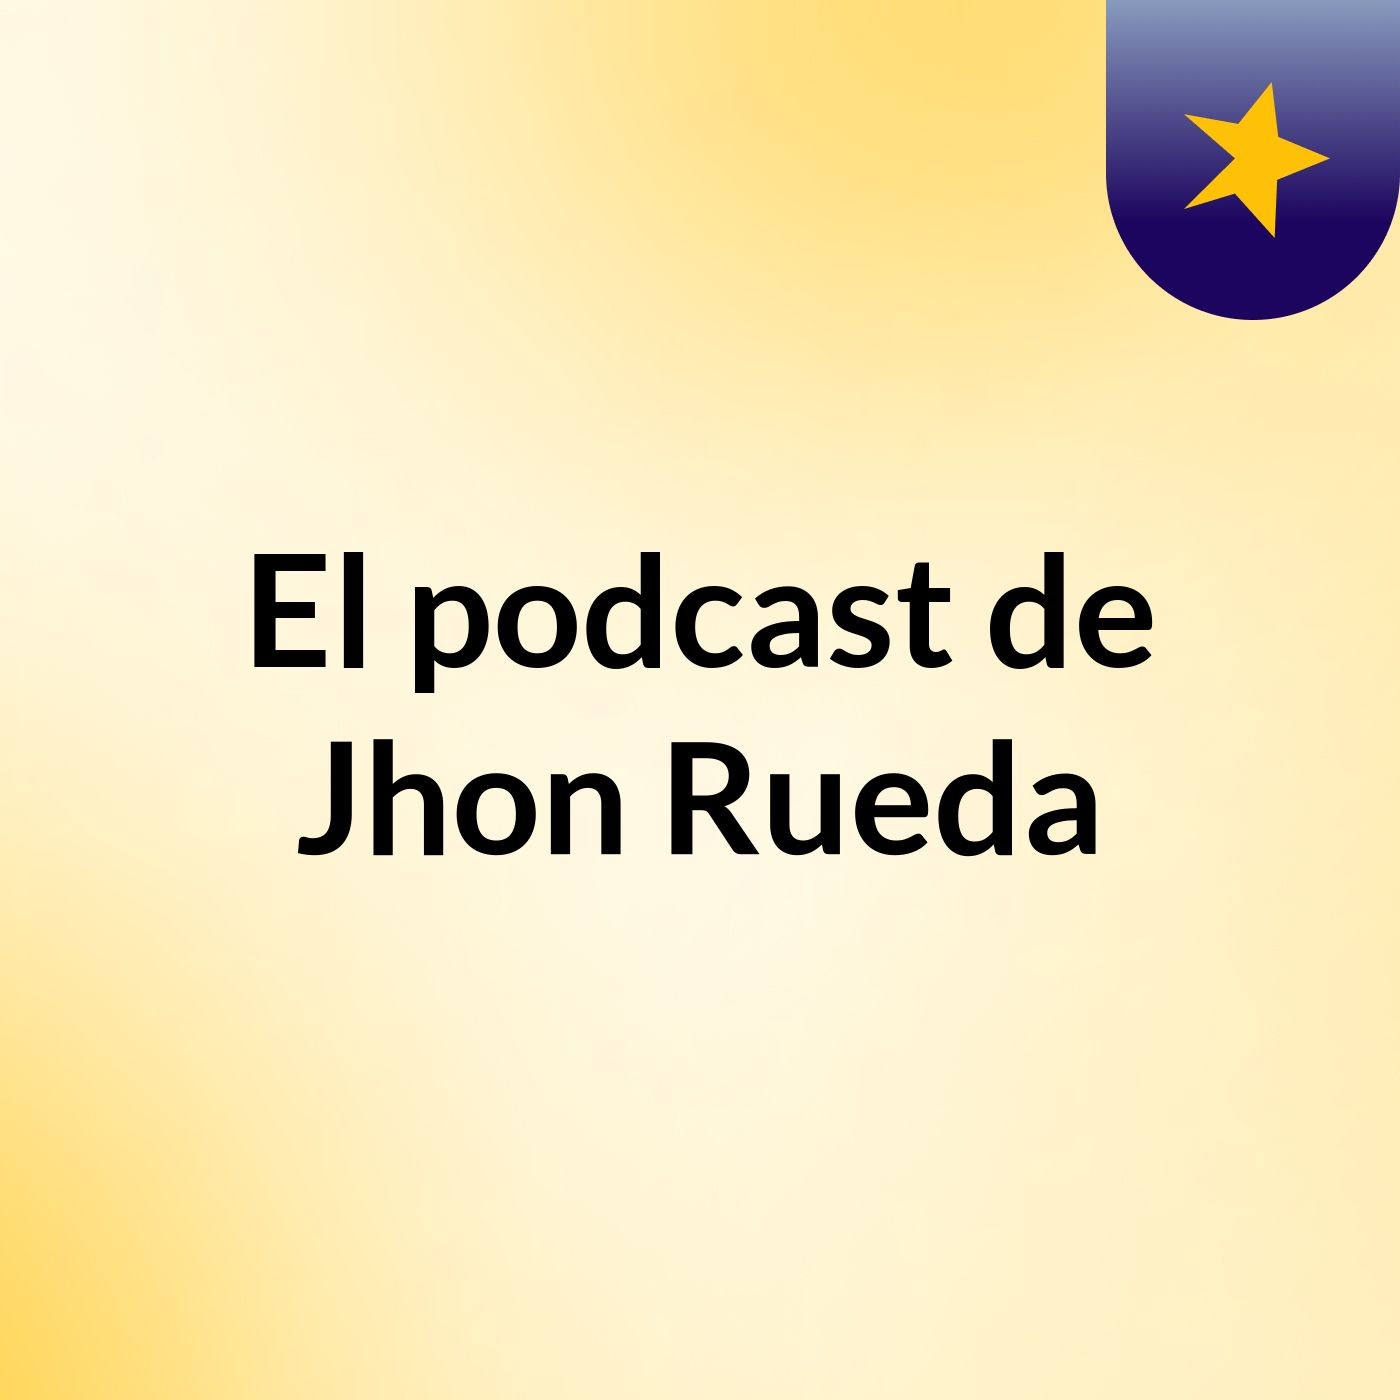 Mi Esposa 37 - El podcast de Jhon Rueda